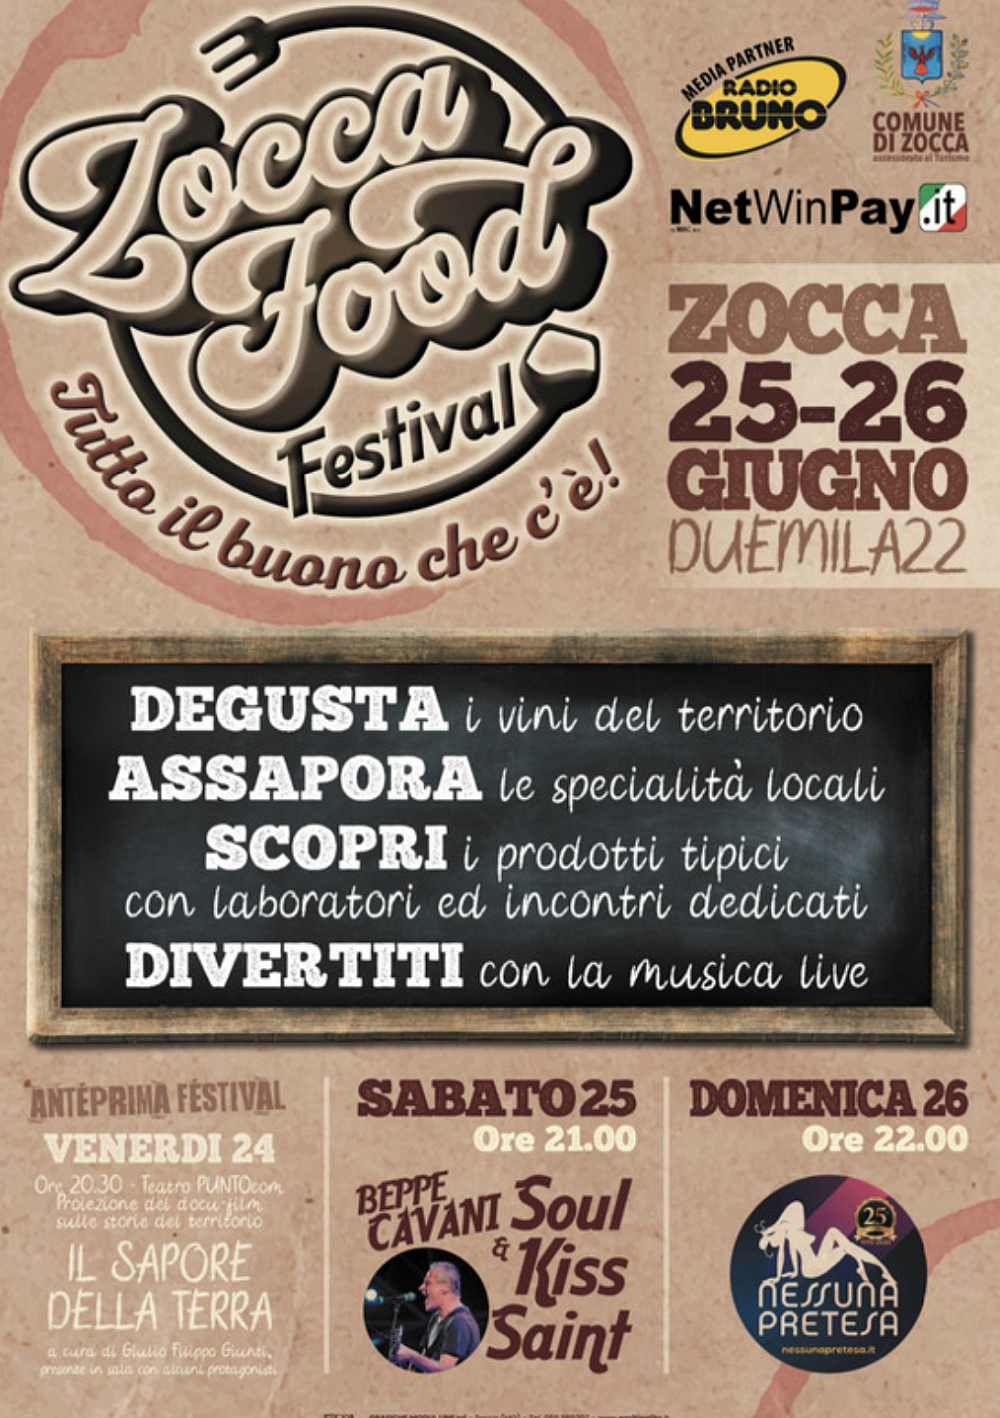 Zocca (MO)
"Zocca Food Festival"
25-26 Giugno 2022 